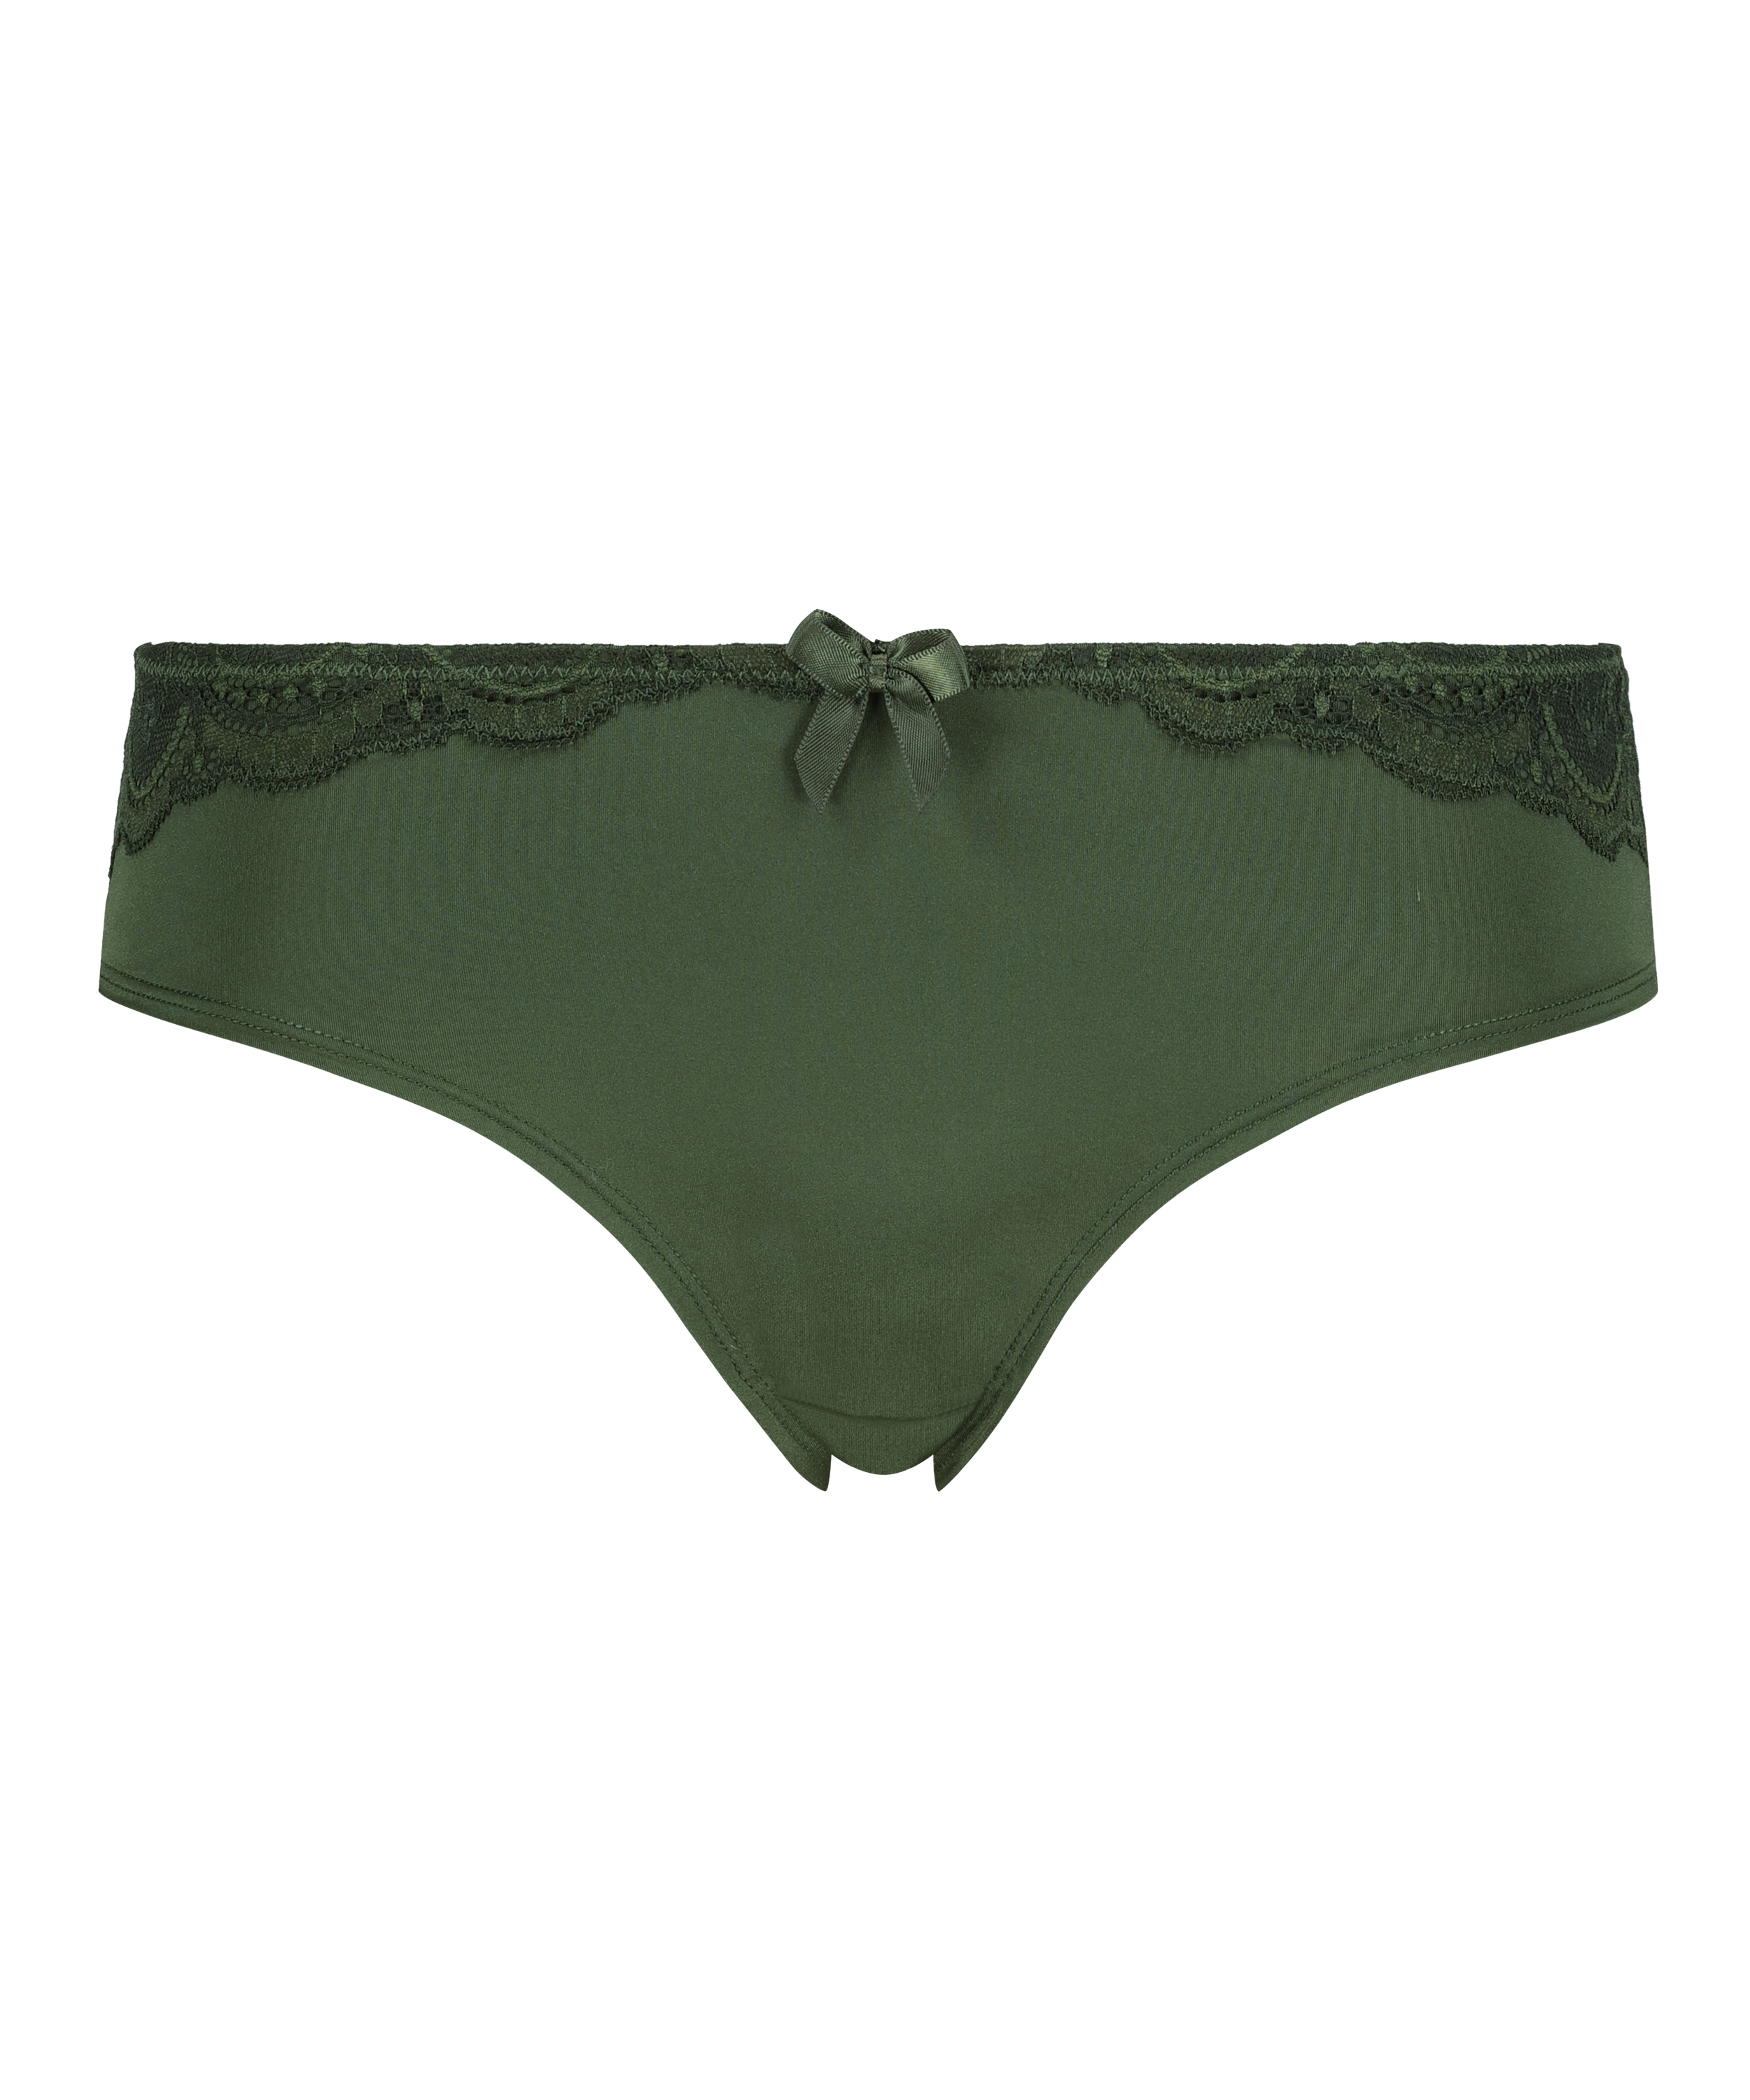 Brazilian-Shorts Gina, grün, main